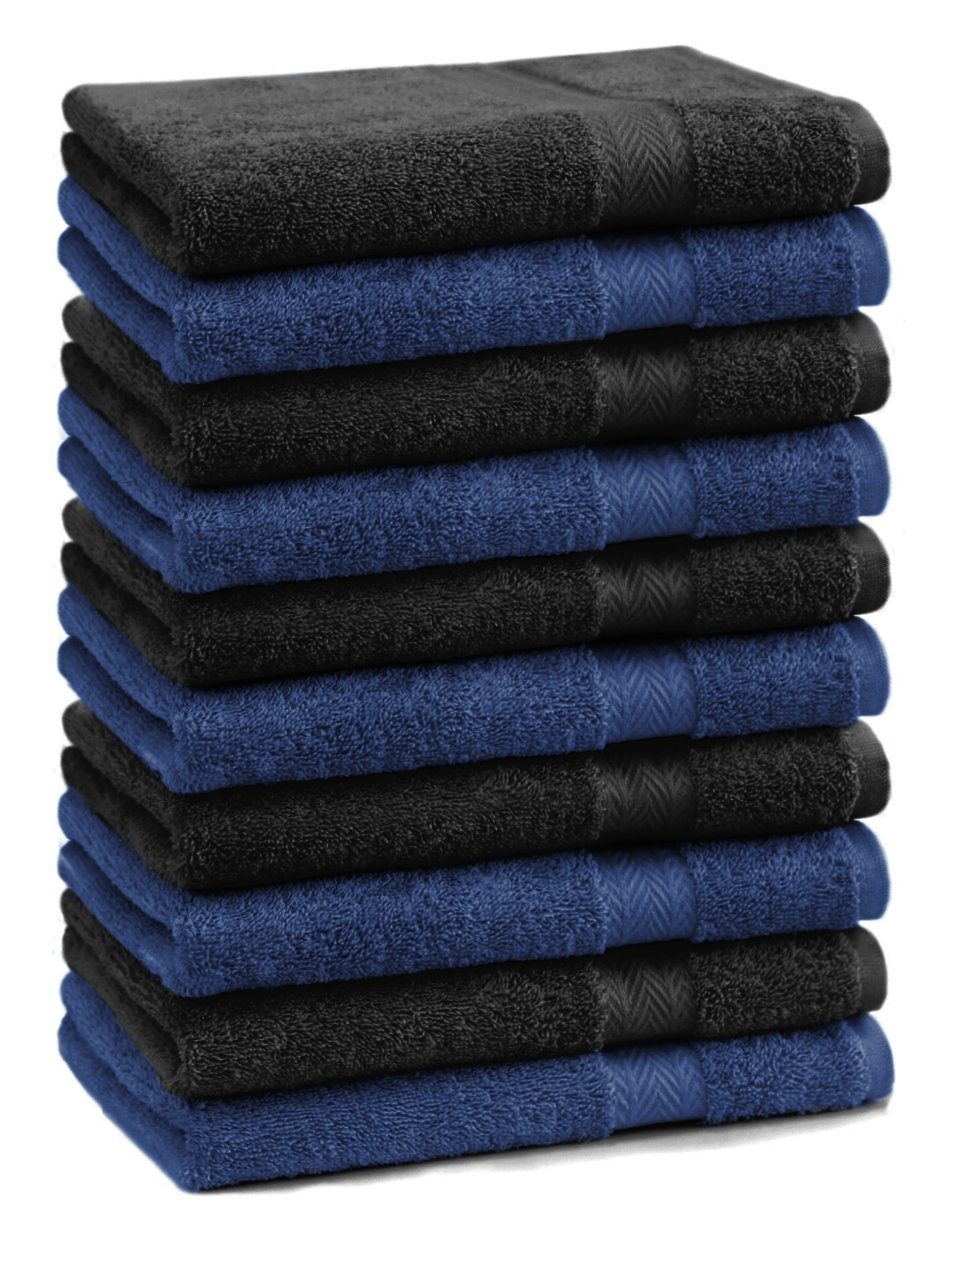 Betz Gästehandtücher 10 Stück Gästehandtücher Premium 100% Baumwolle Gästetuch-Set 30x50 cm Farbe dunkelblau und schwarz, 100% Baumwolle